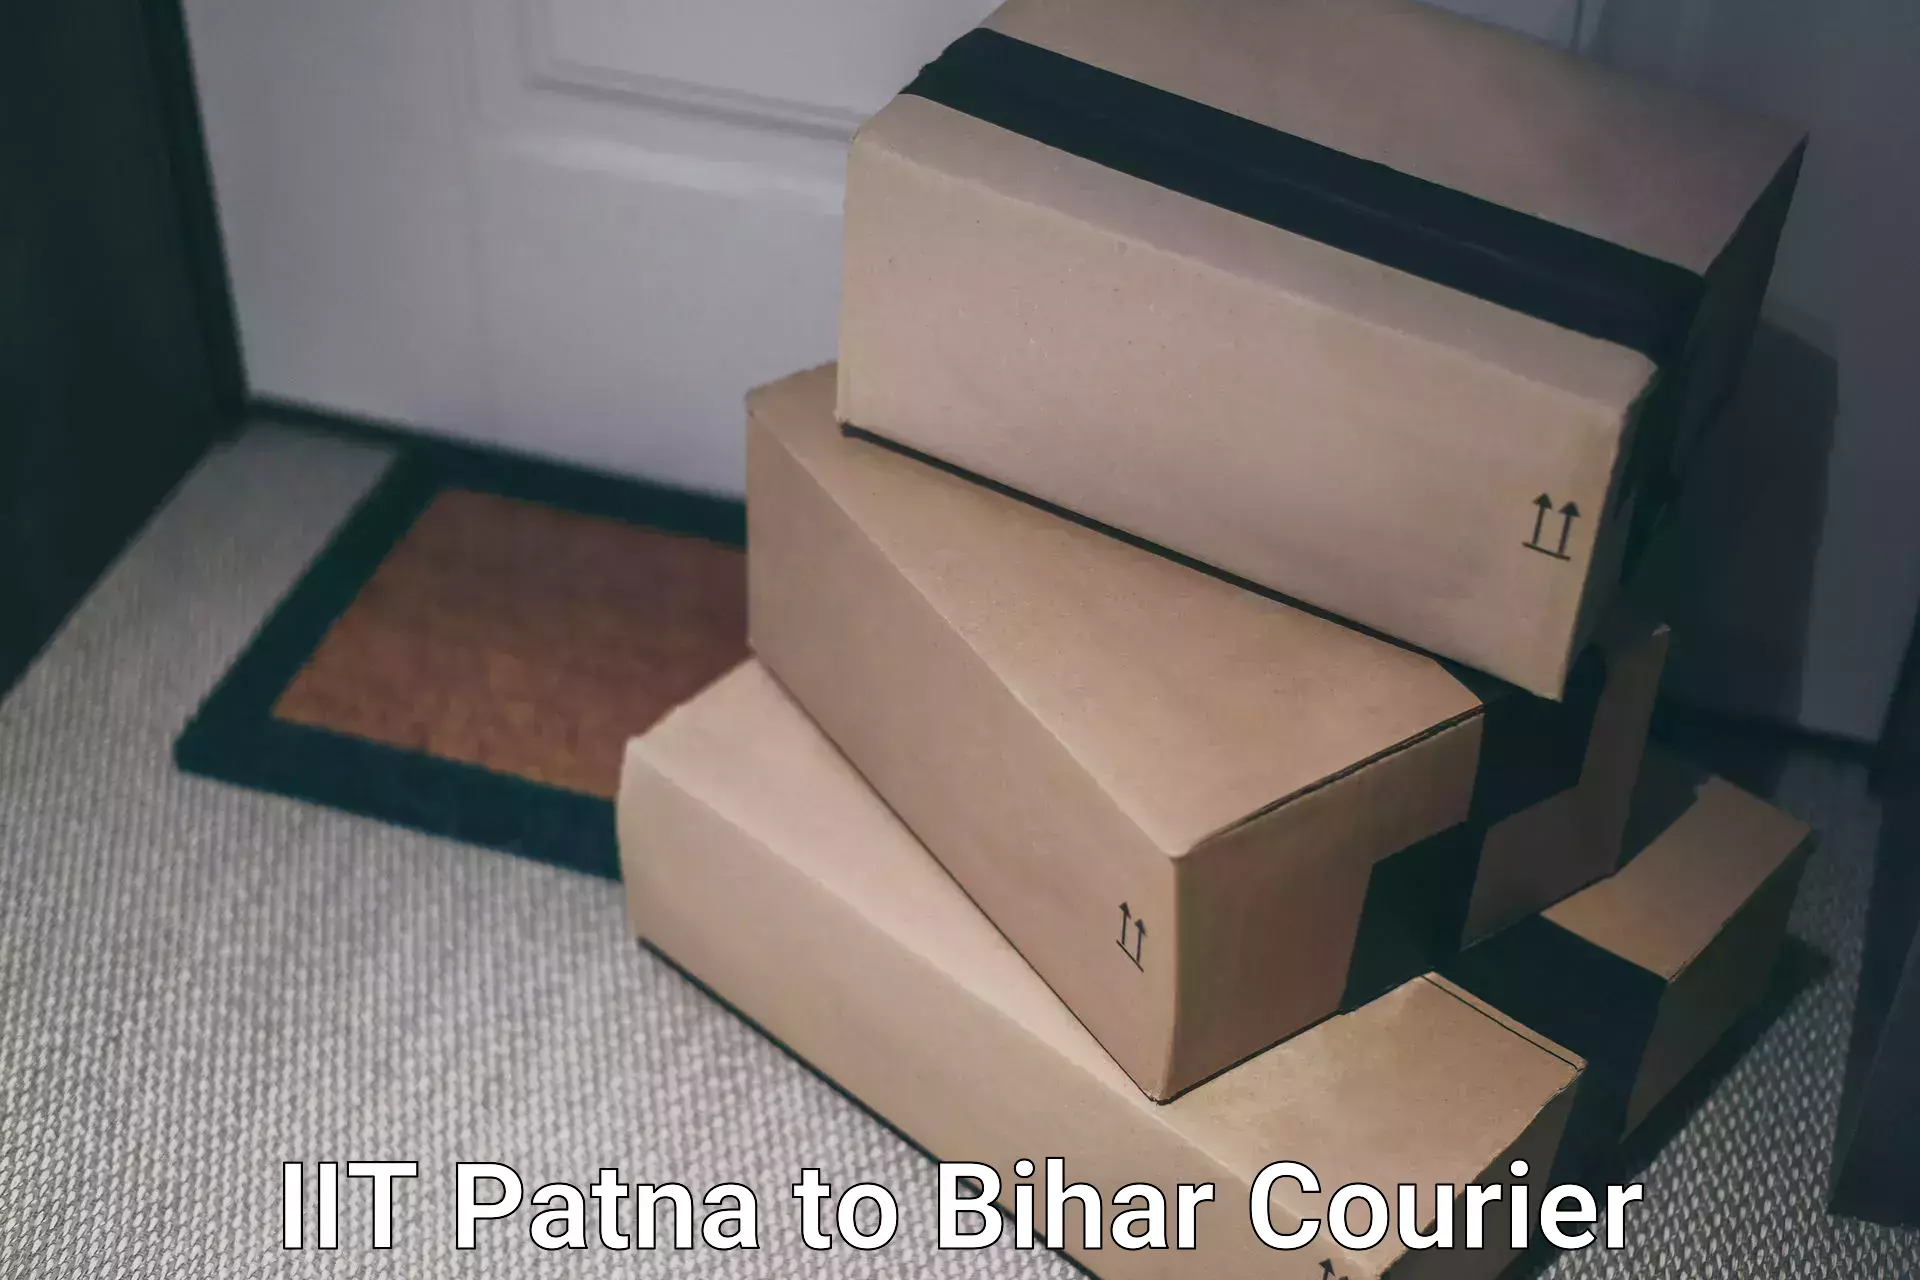 Ground shipping in IIT Patna to Darbhanga